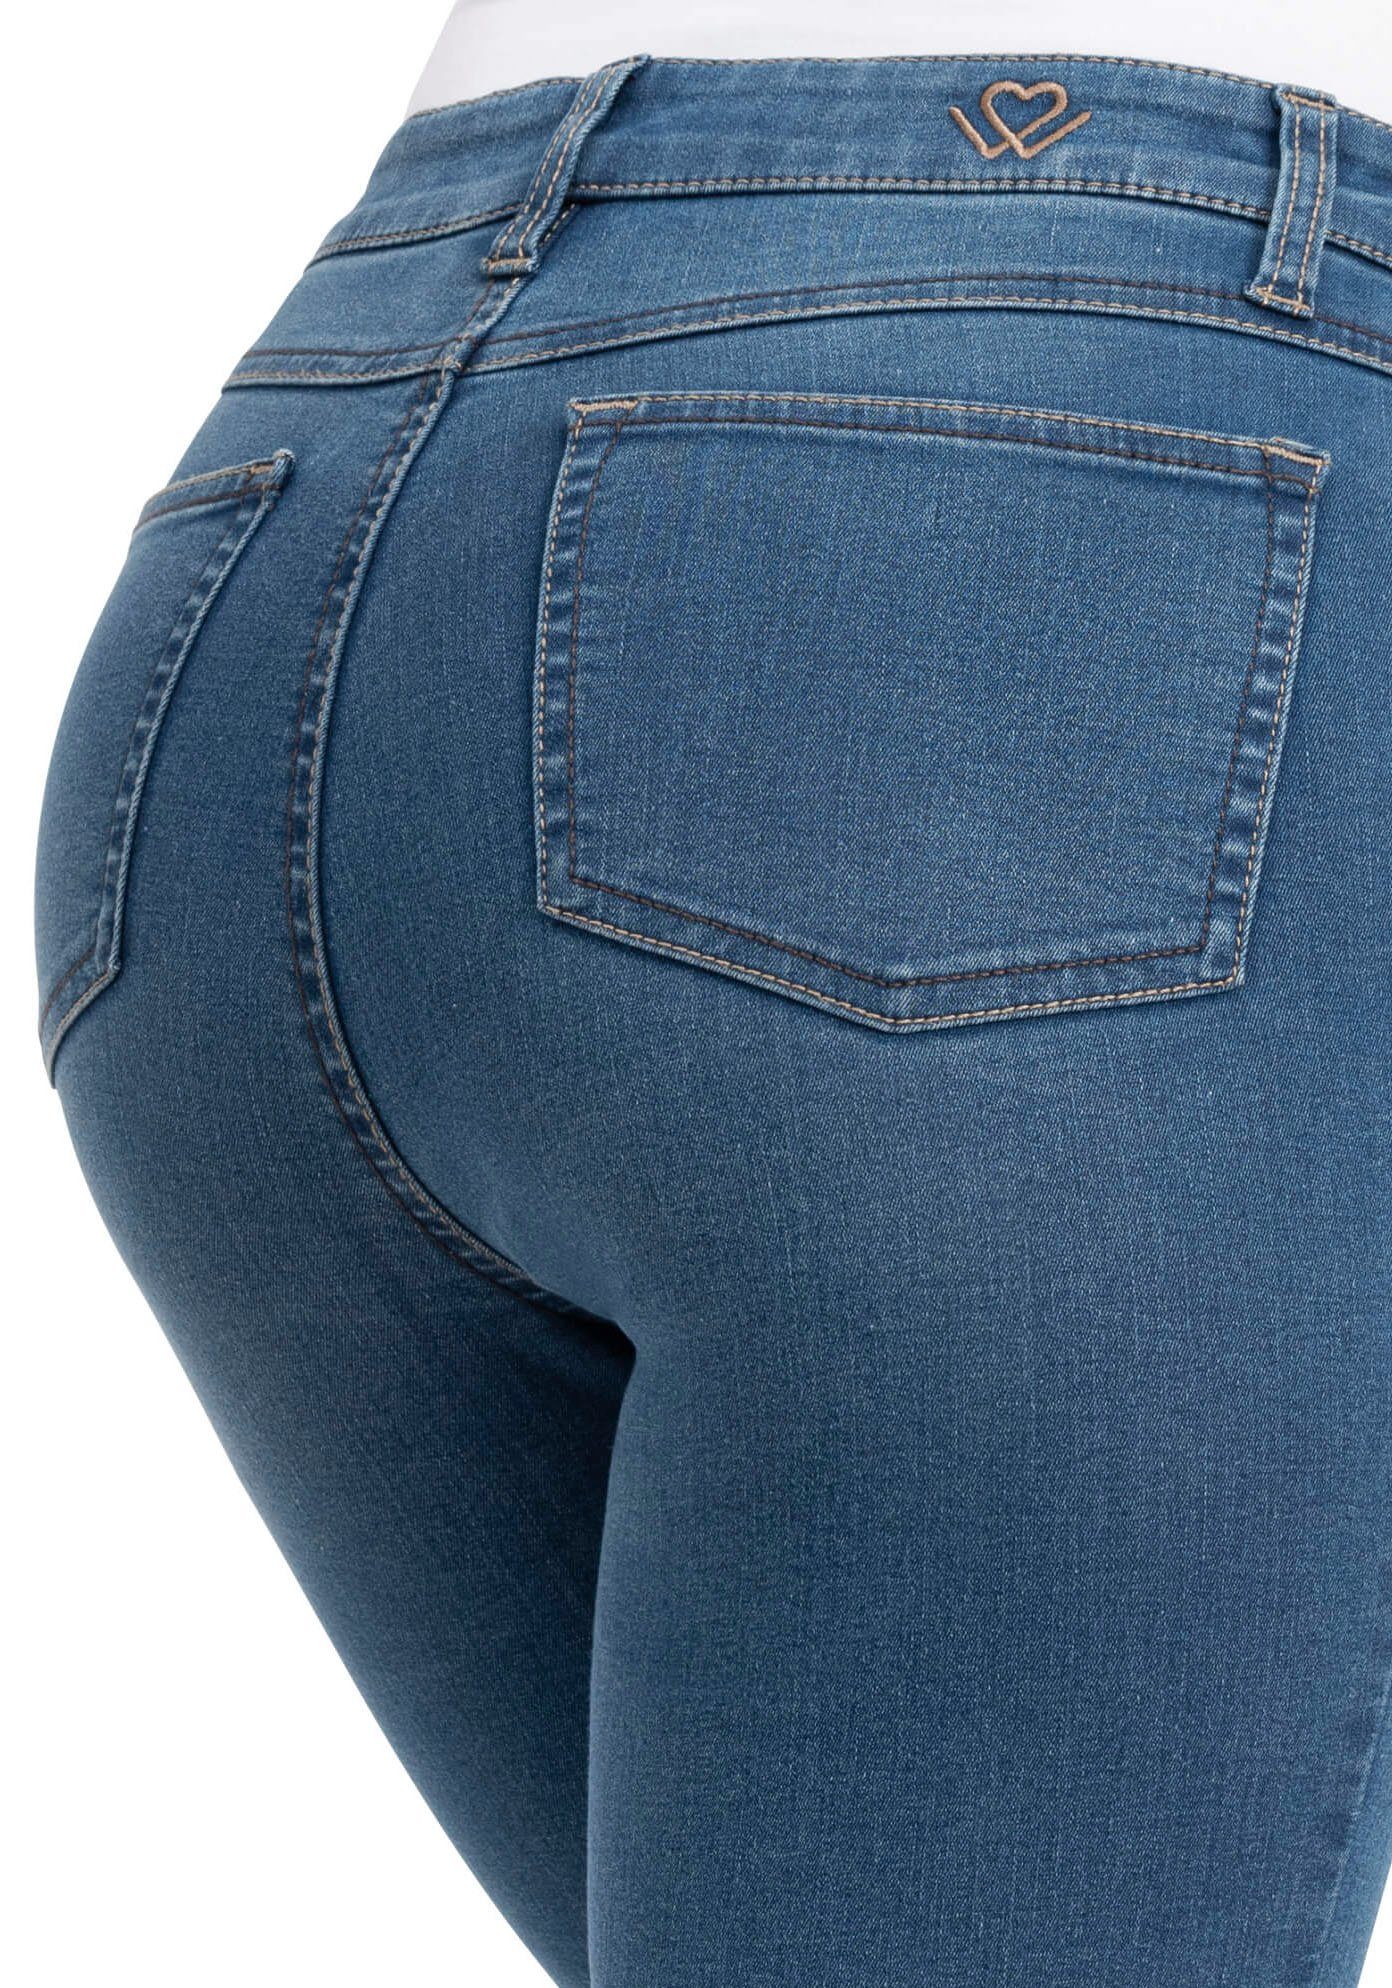 wonderjeans High-waist-Jeans High Waist verkürztem super Bein blue Hoch geschnitten mit WH72 leicht stonewash